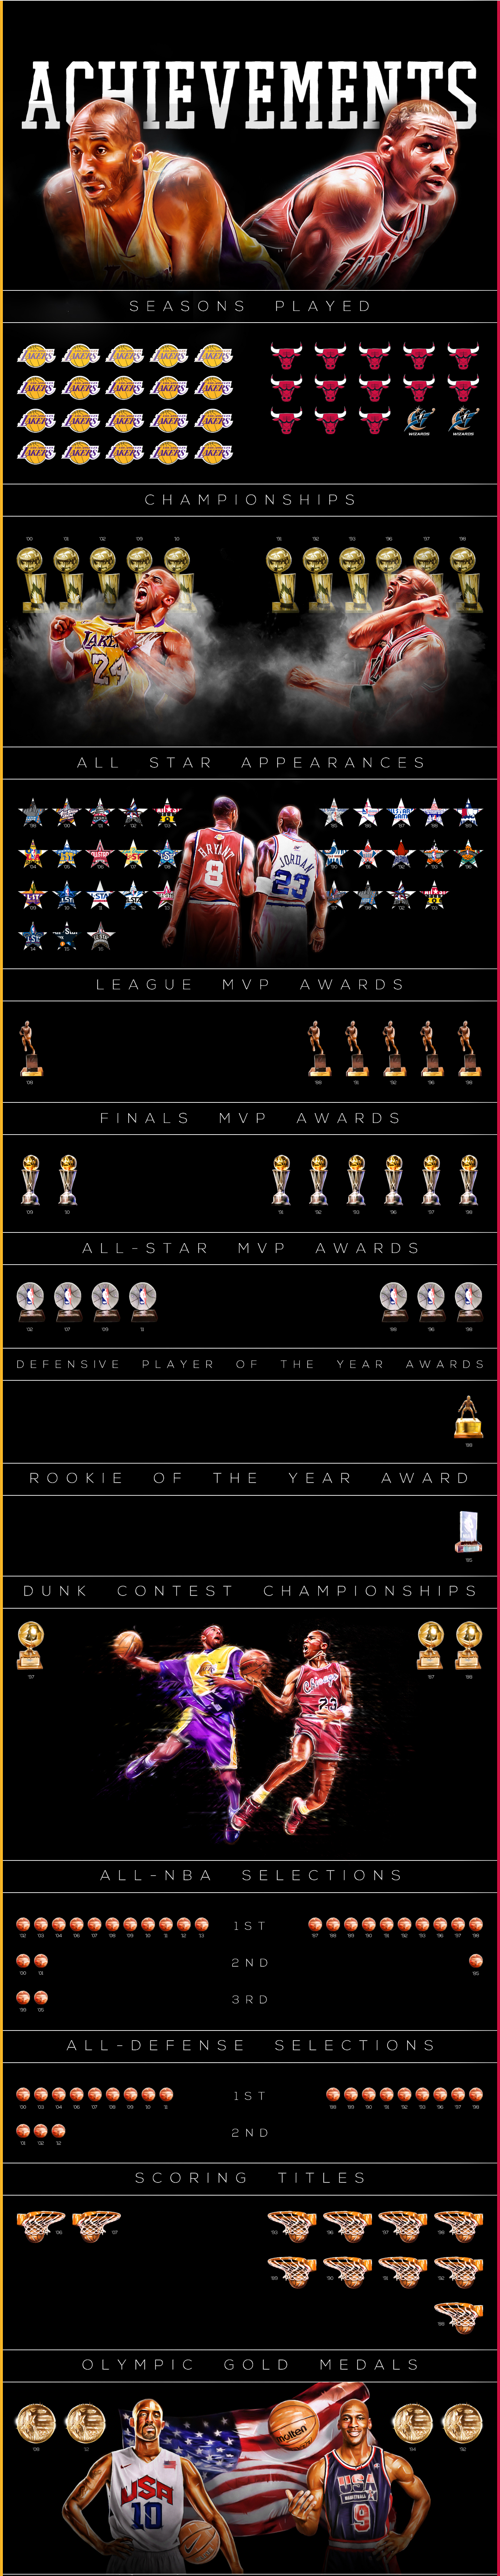 Kobe Bryant vs Michael Jordan Final Career Comparison